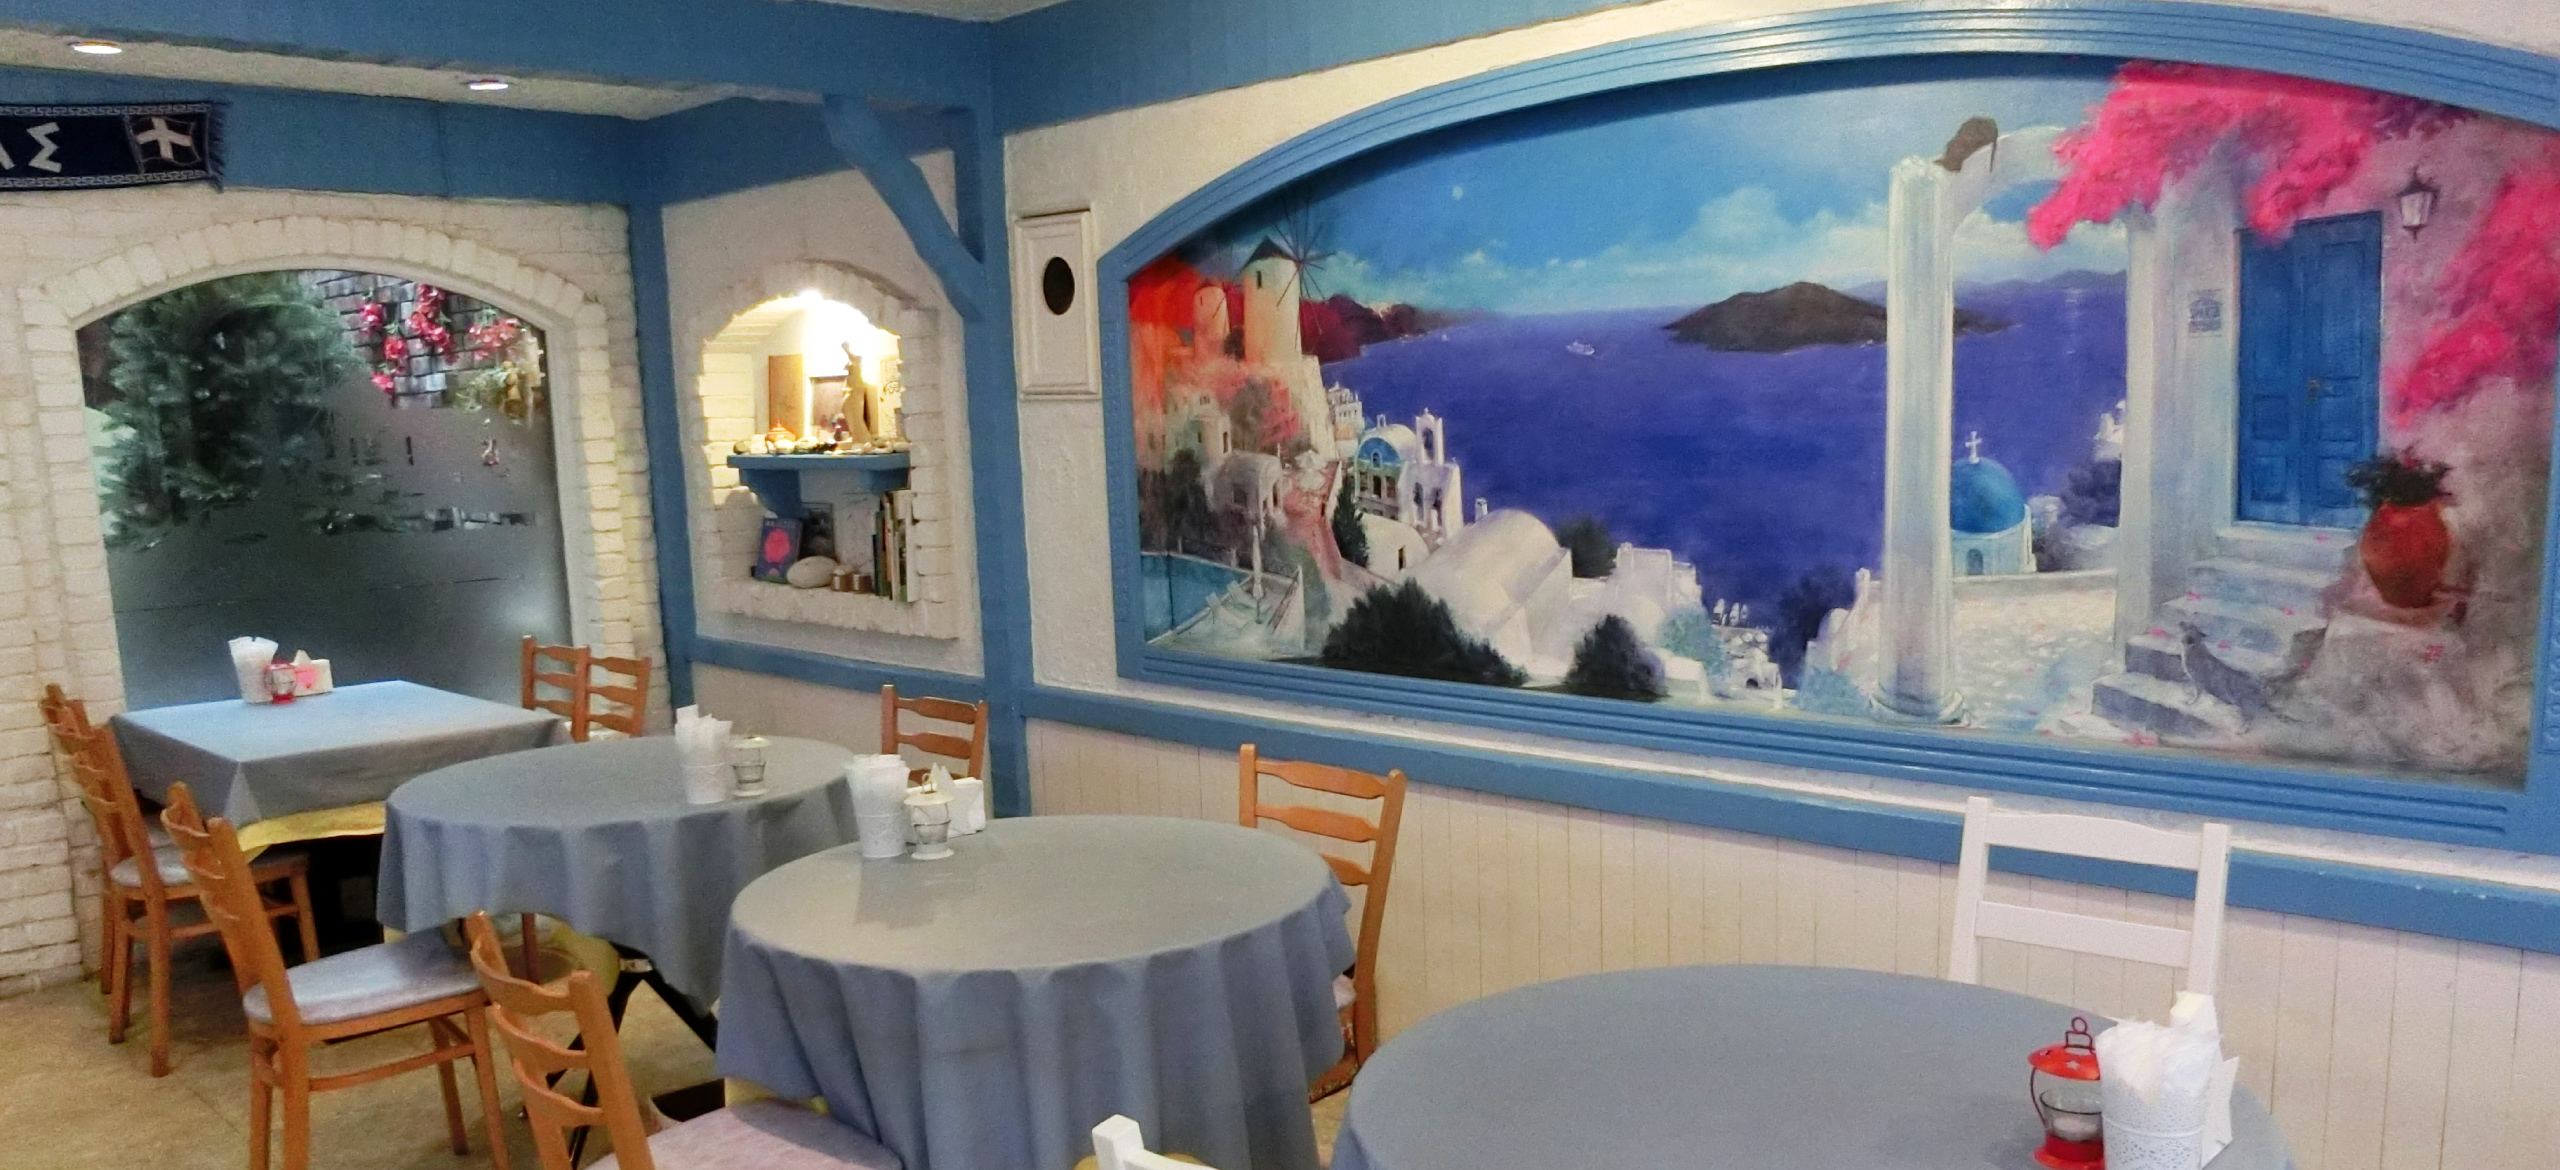 1953年 ギリシャの船乗り-料理人-により創業 受け継がれる本場のギリシャ料理